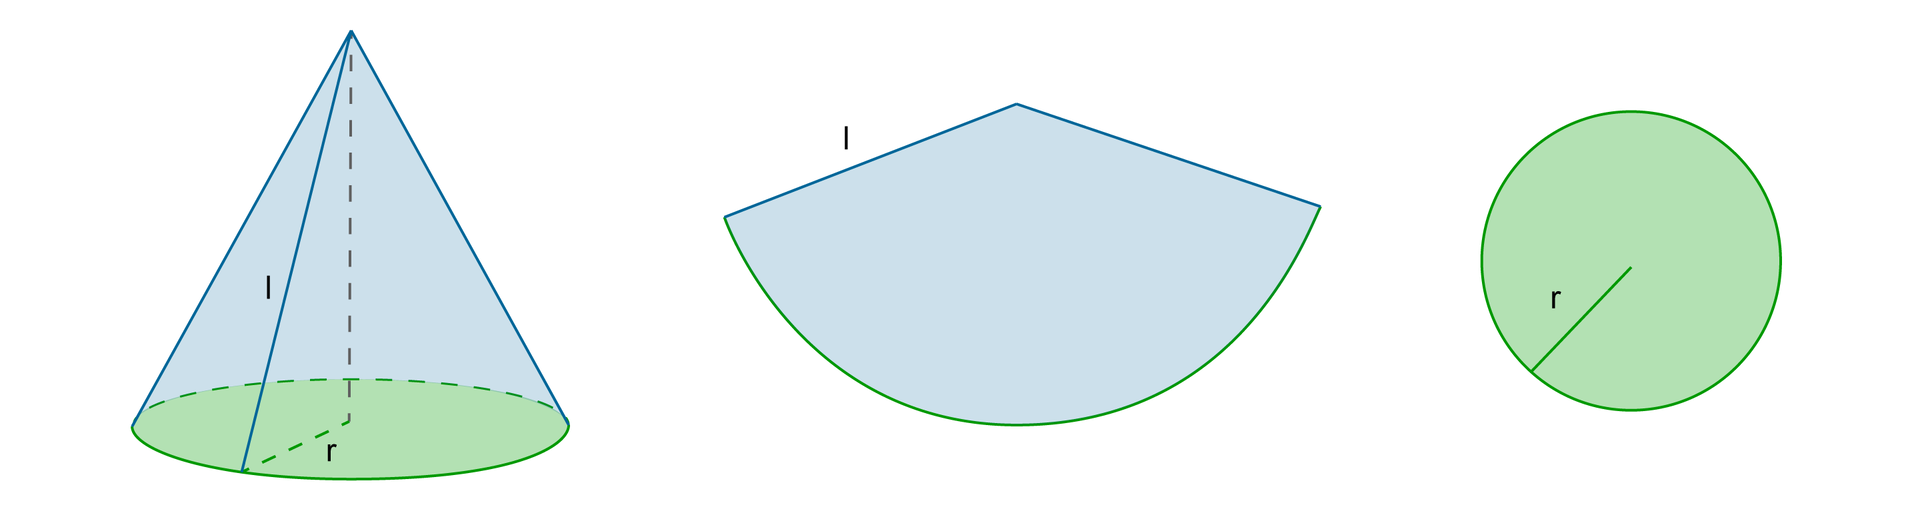 Rysunek stożka z zaznaczonym promieniem r i tworzącą stożka l oraz koła będącego podstawą stożka i wycinka koła, będącego powierzchnią boczną.